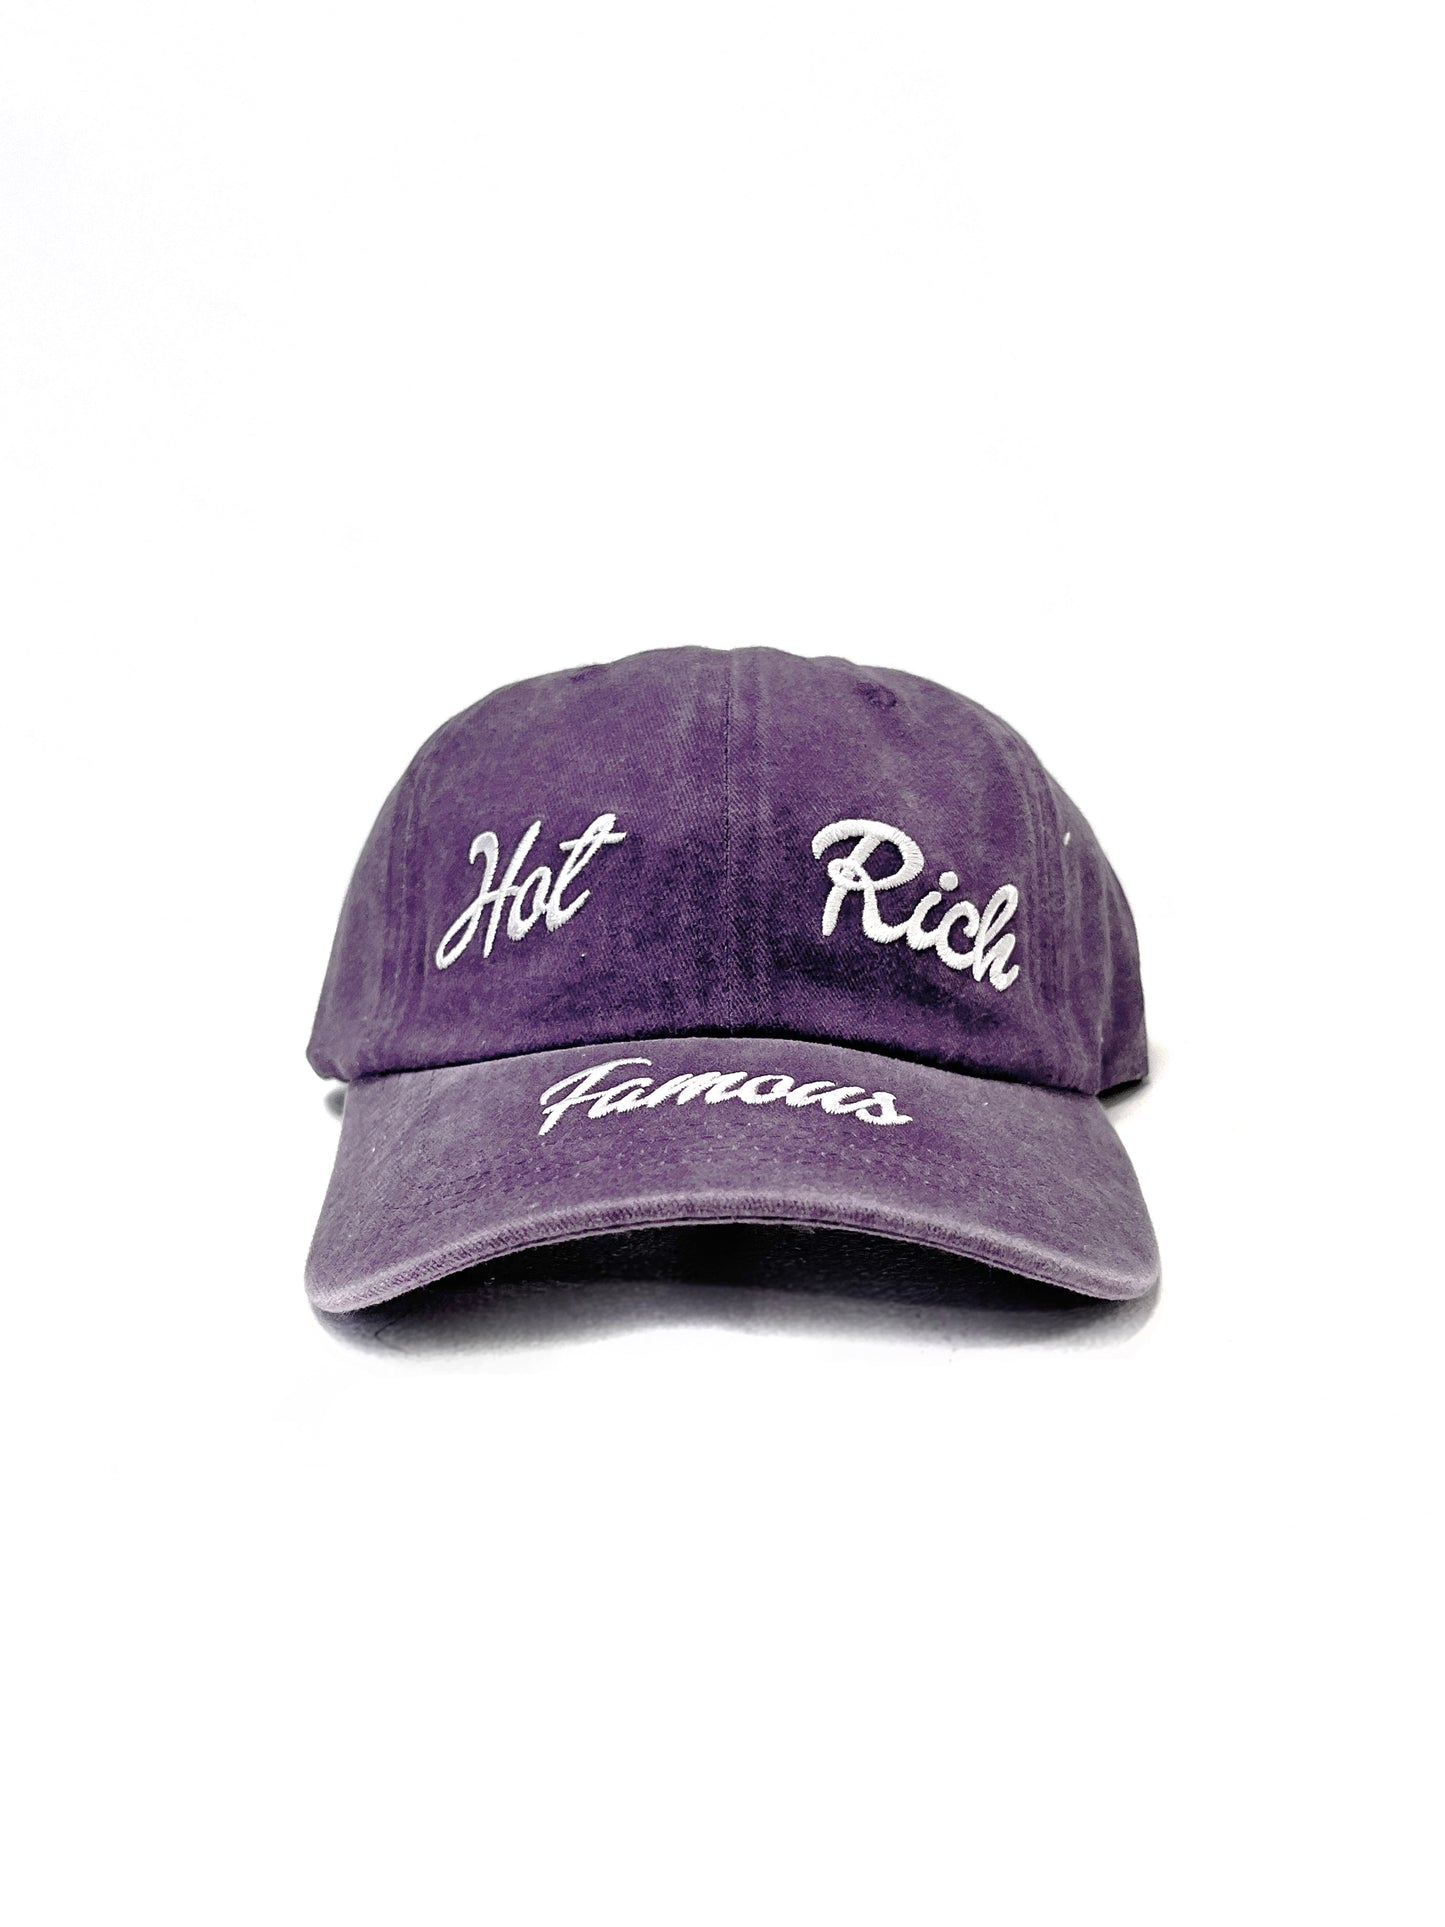 AVAVAV Hot Rich Famous Purple Cap